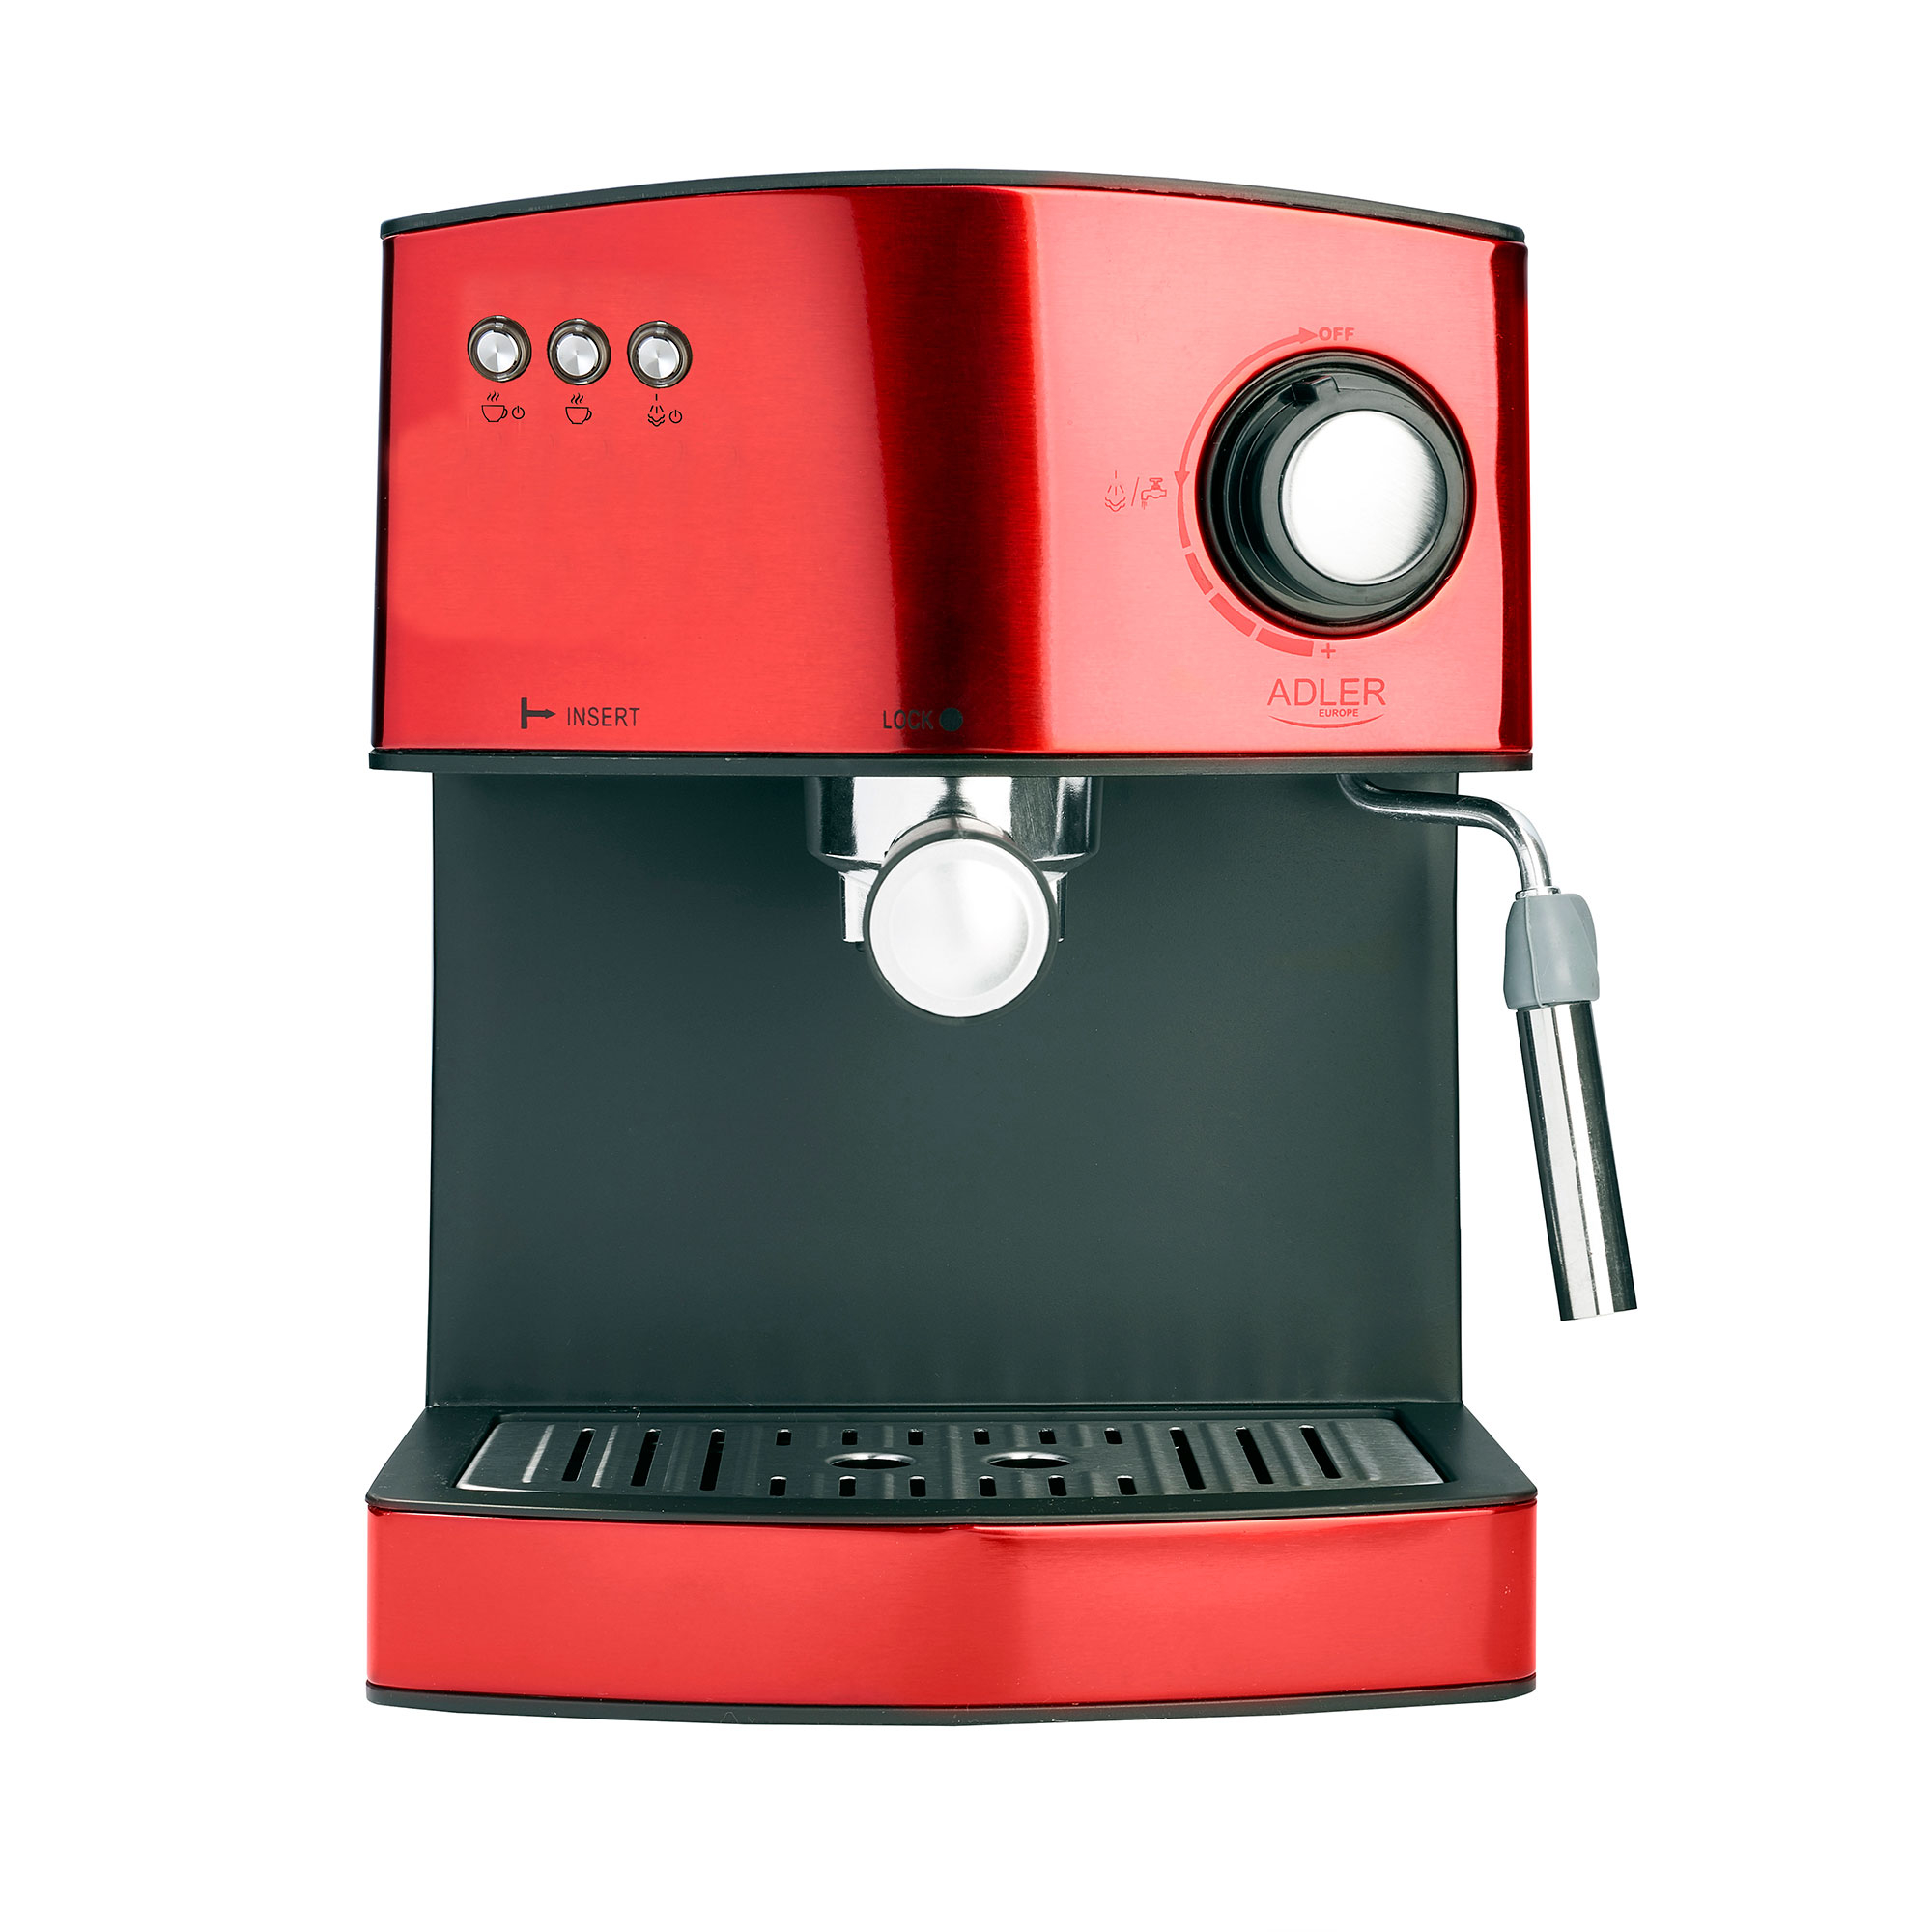 Adler 4404r Cafetera espresso 15 16 para preparar latte y capuccino vaporizador espumar leche tazas color rojo 850w express manual brazo doble salida 850 4404cr